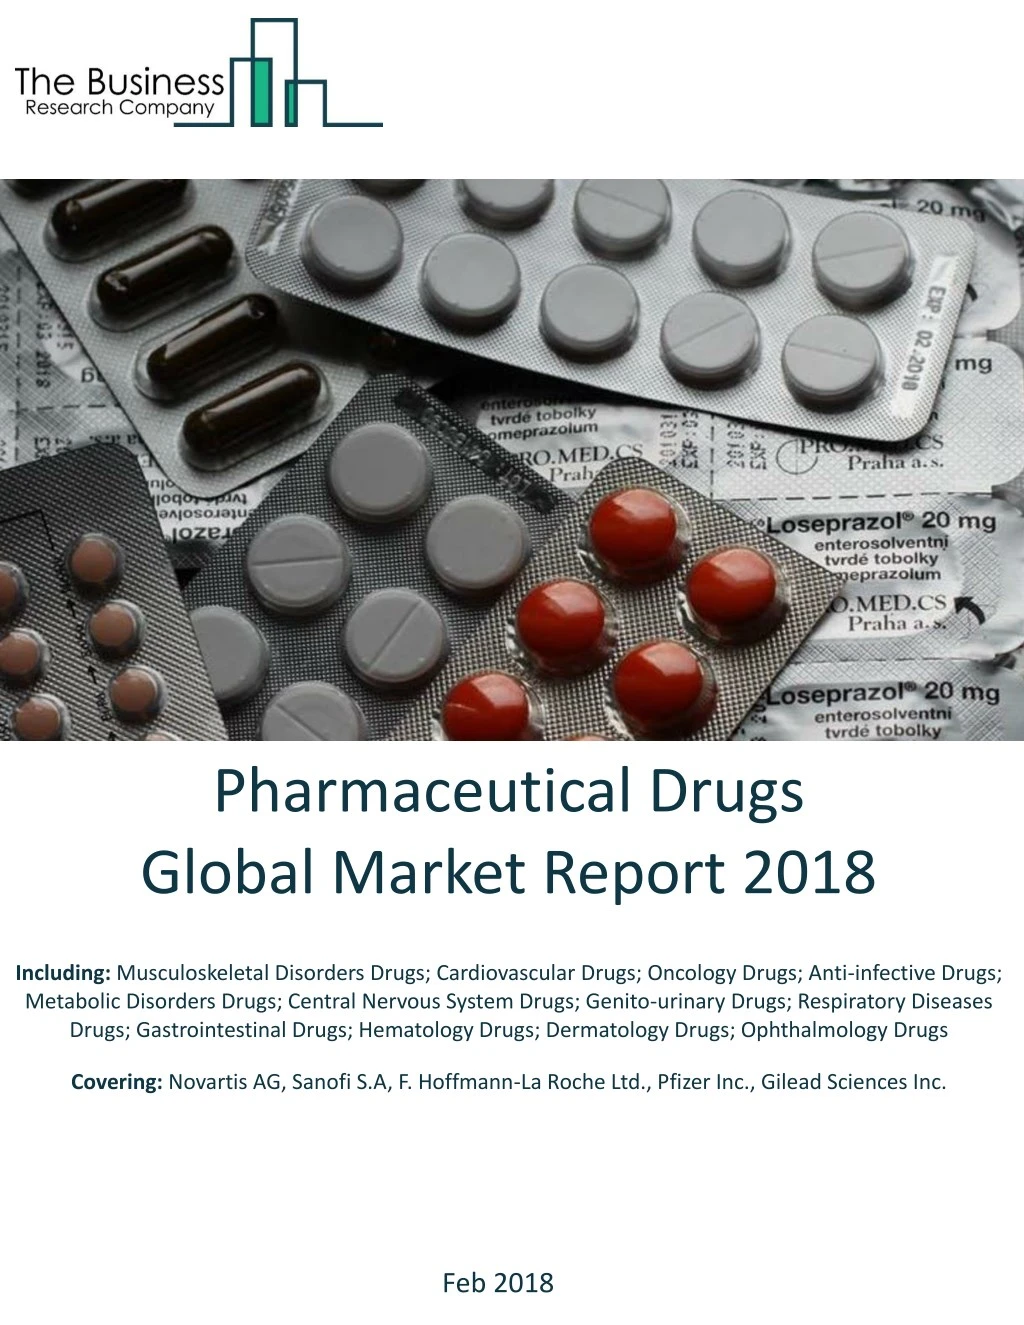 pharmaceutical drugs global market report 2018